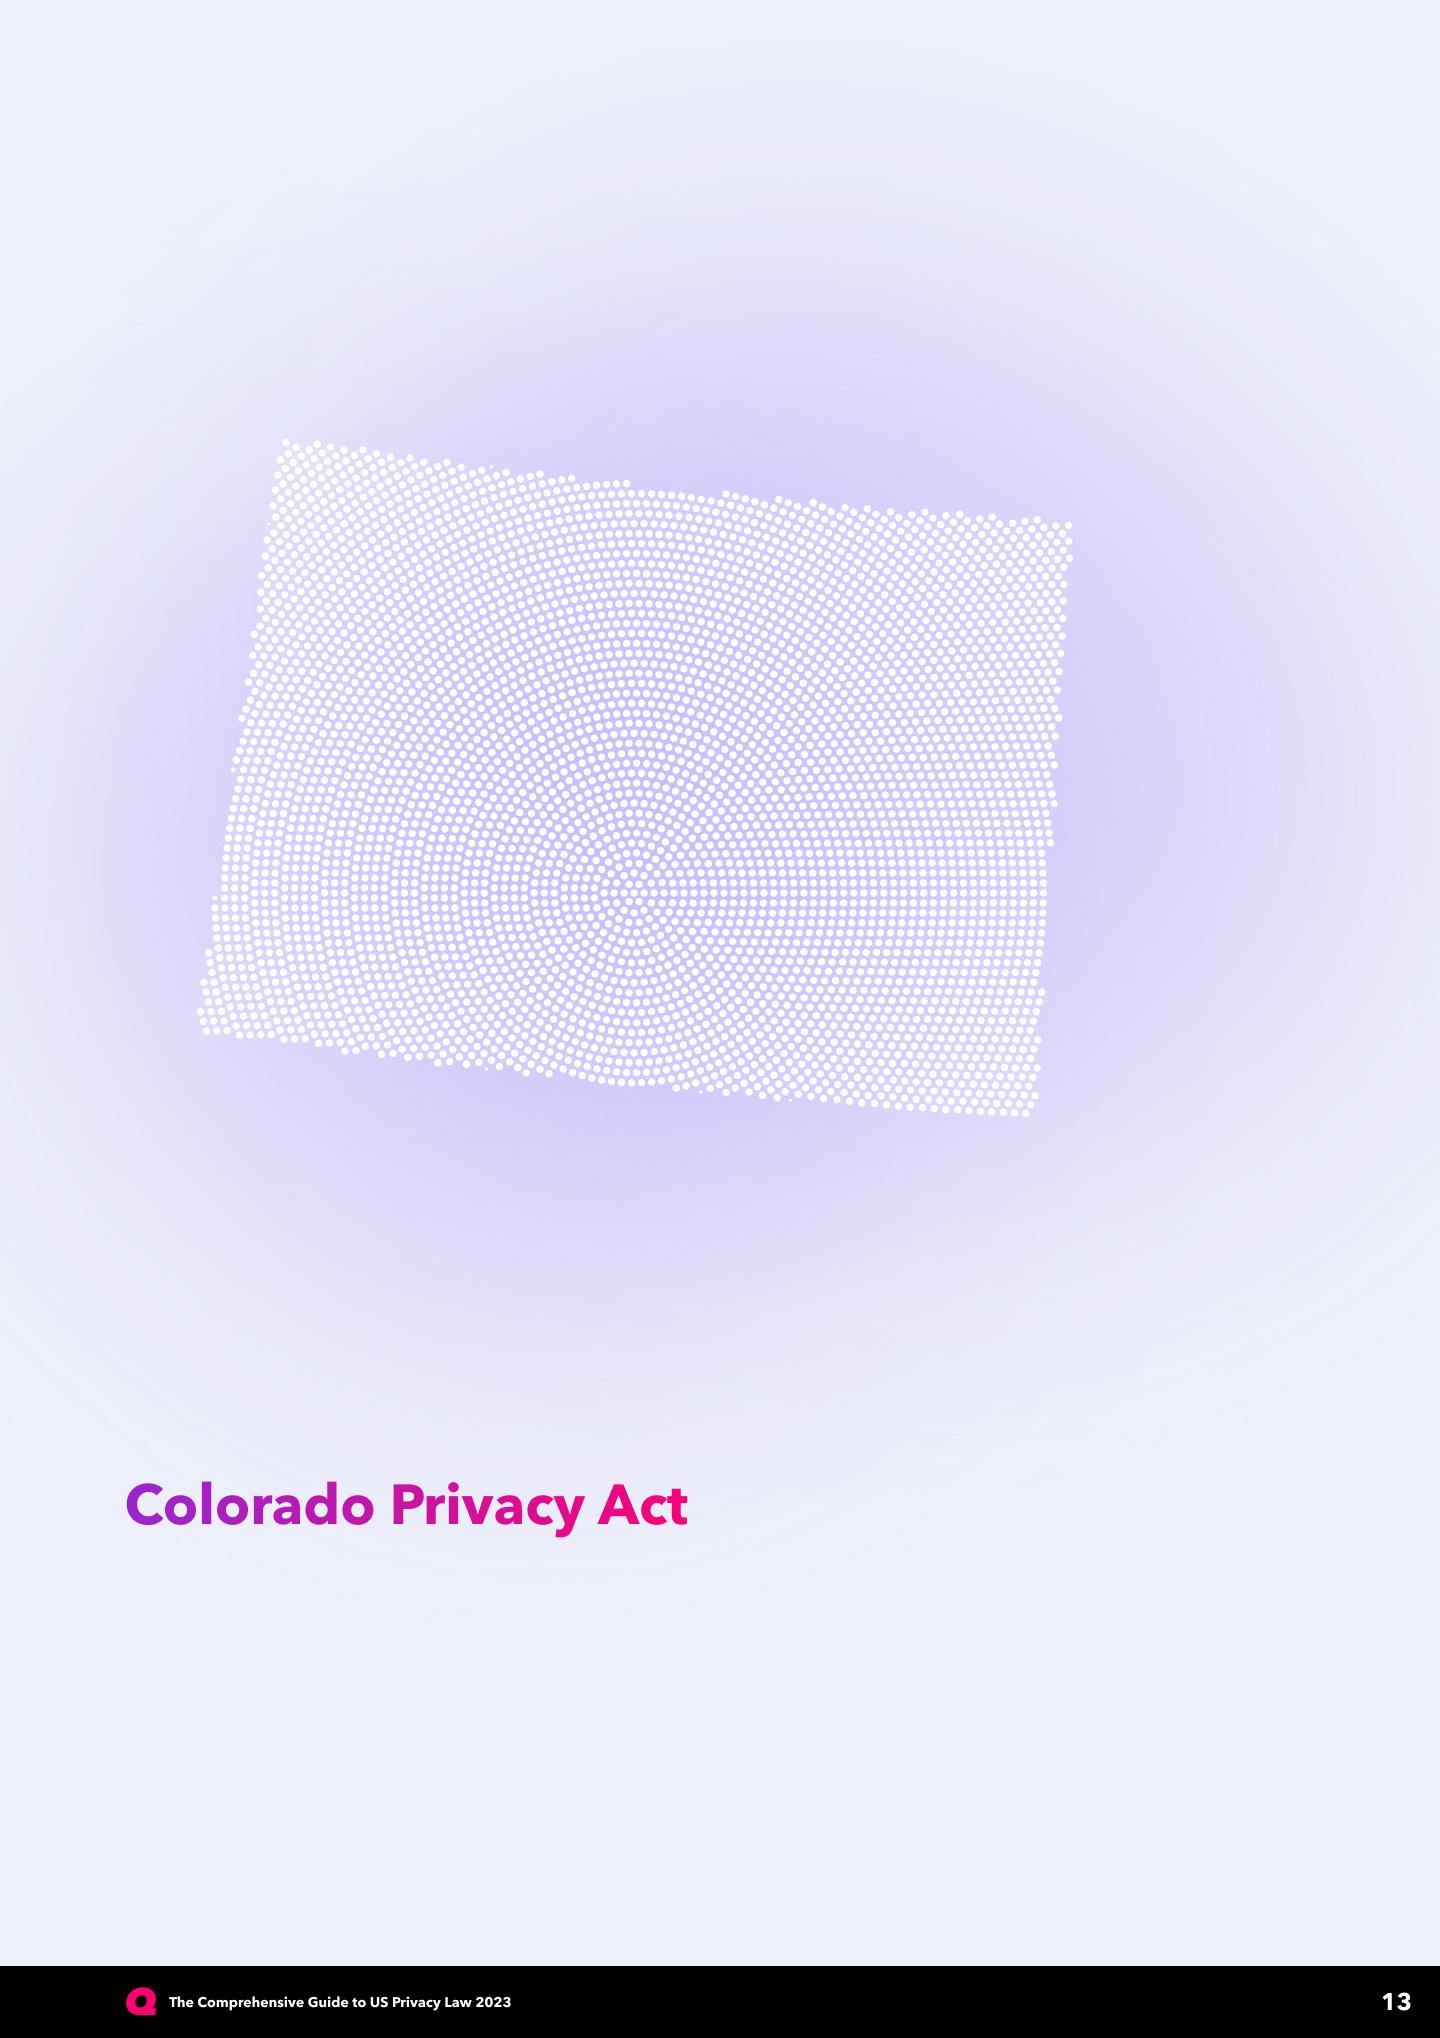 comprehensive-guide-US-privacy-law-2023-Colorado